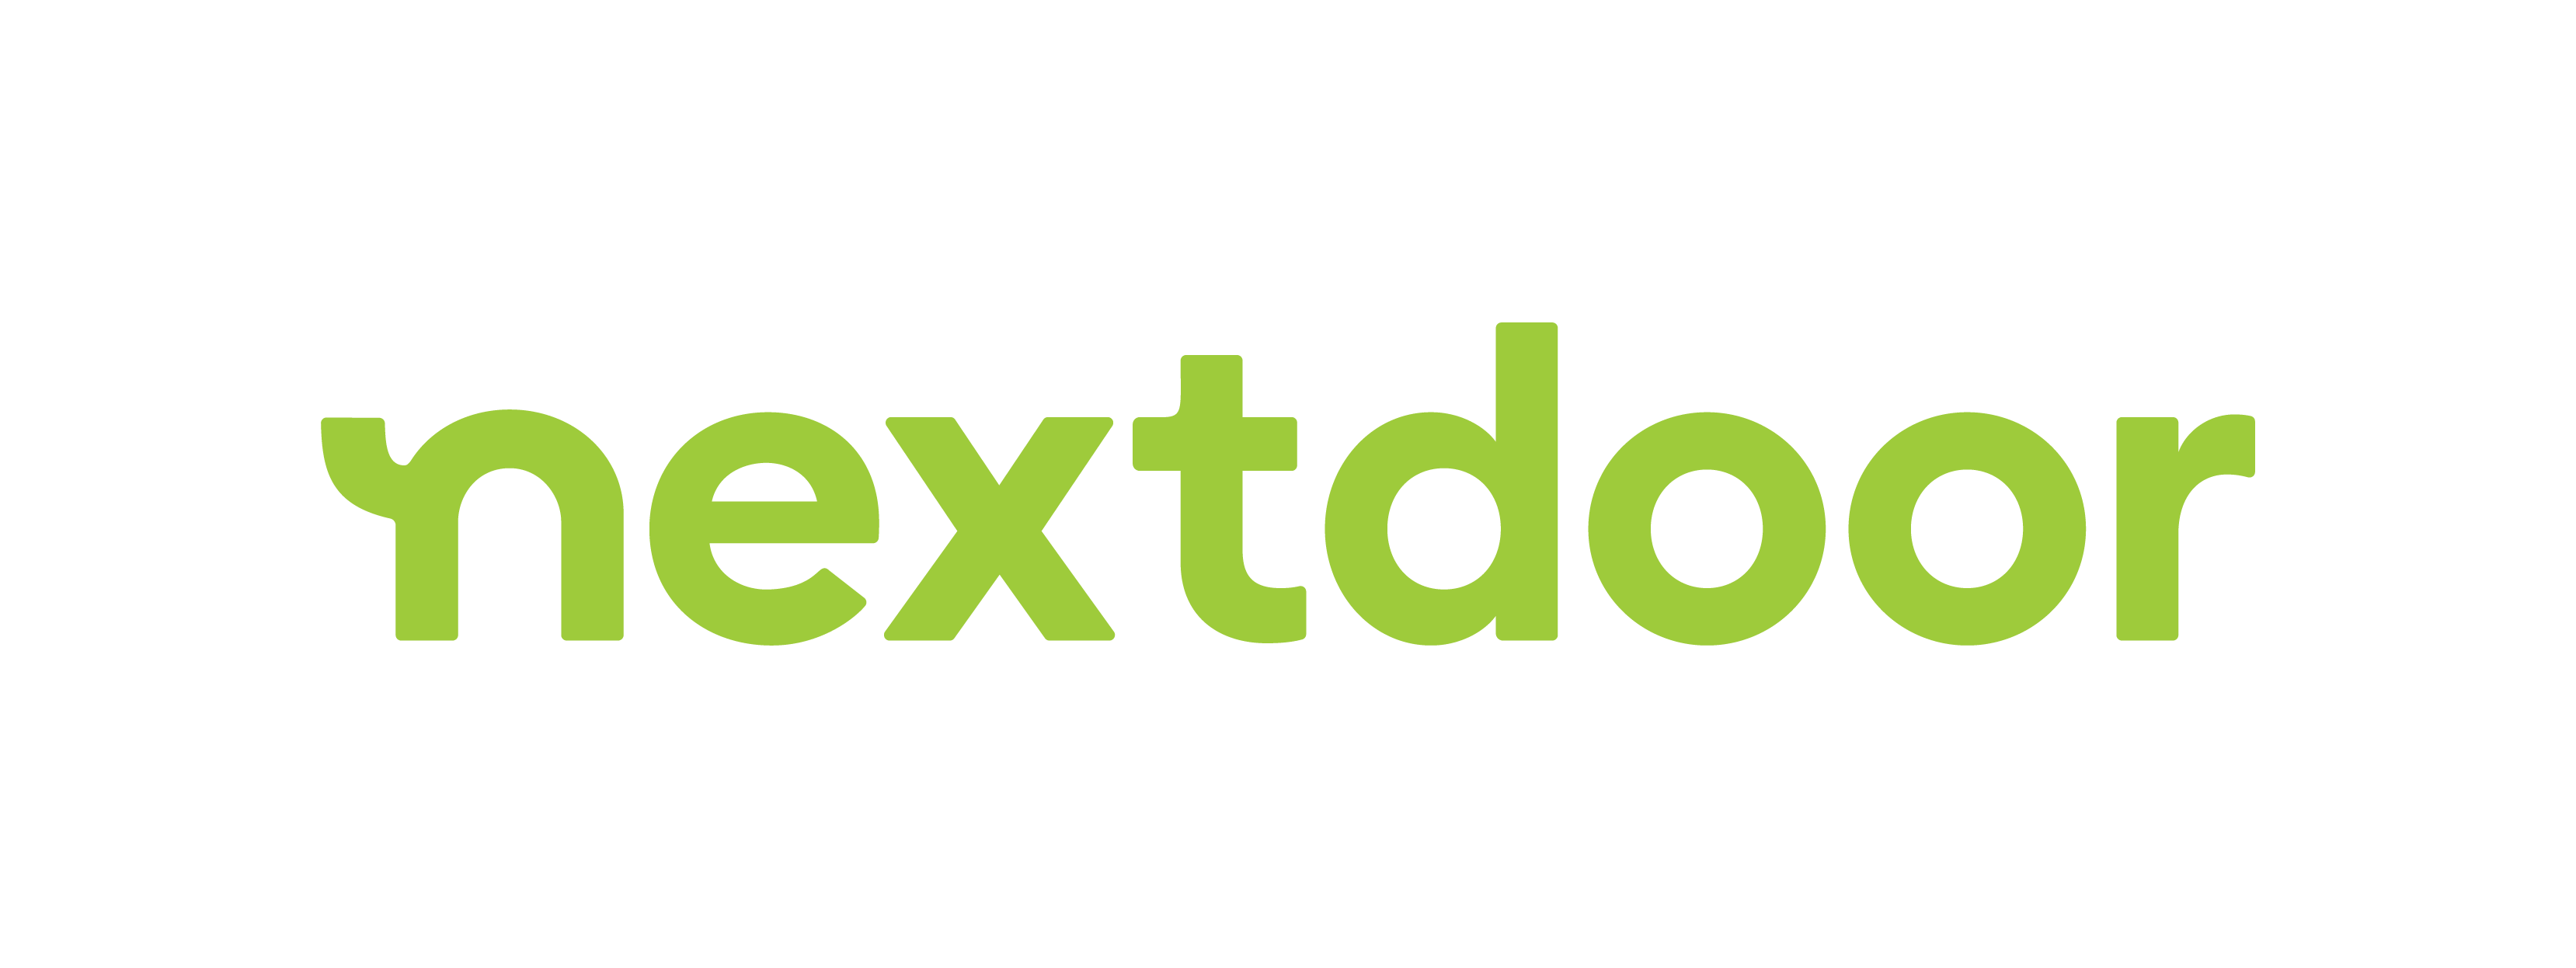 It starts with a wave - Nextdoor’s new look - Nextdoor Blog UK nextdoor neighborhood favorite